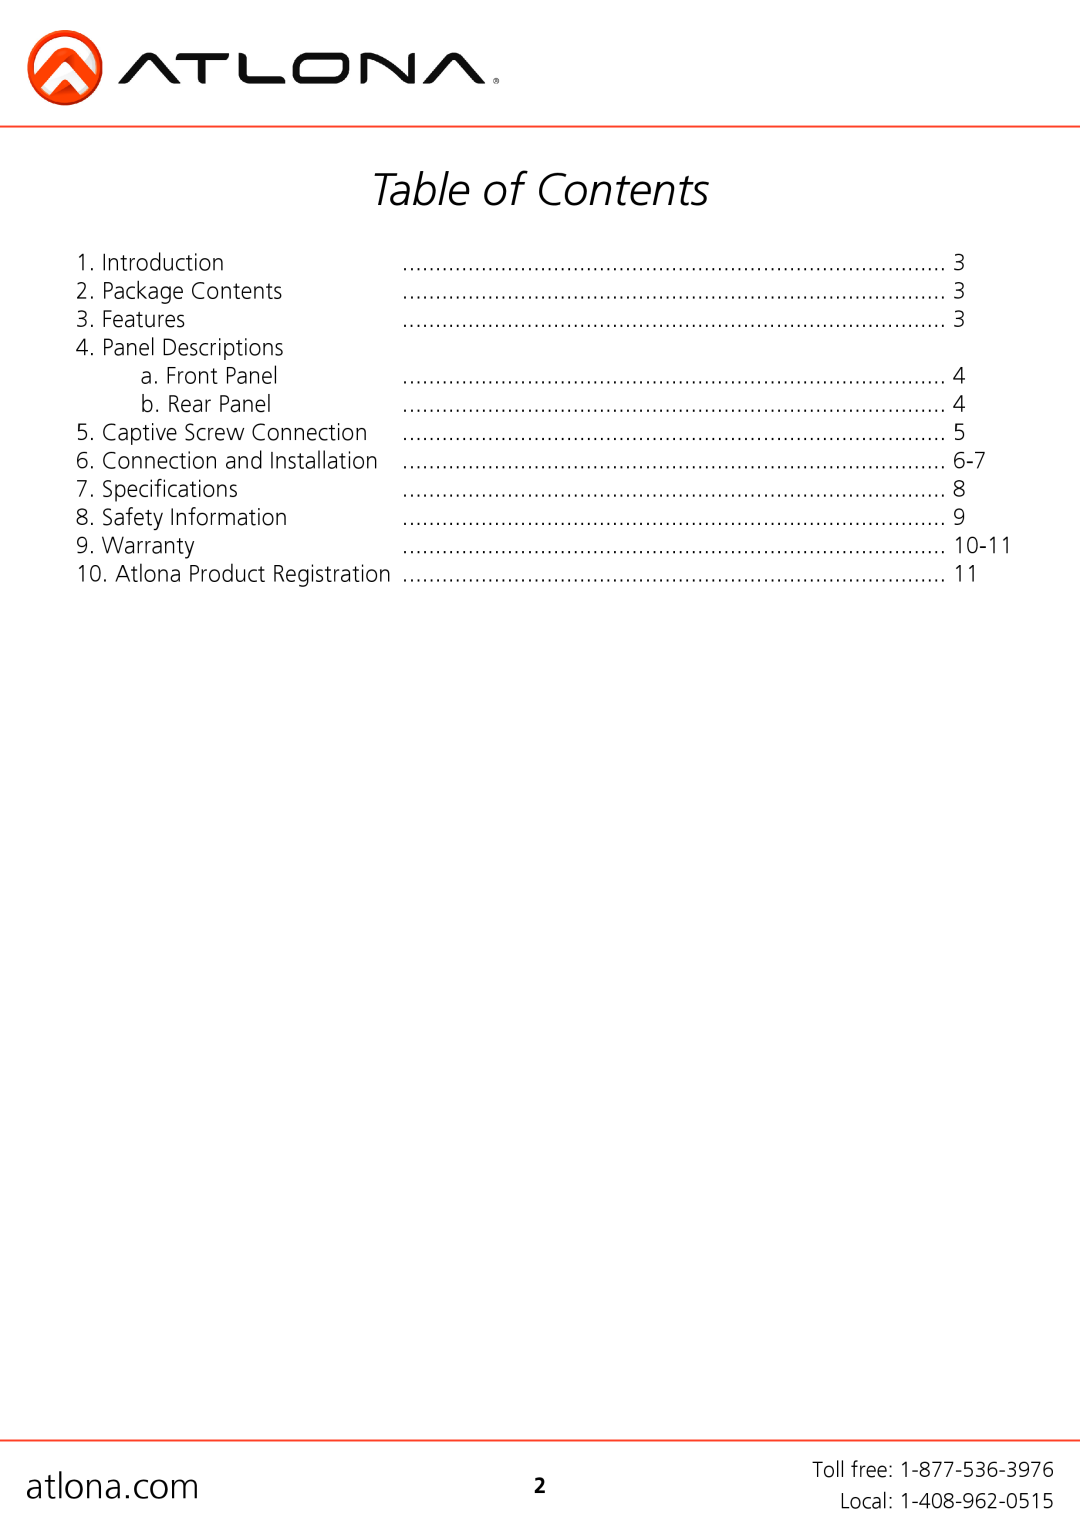 Atlona AT-PS-POCC manual Table of Contents, atlona.com 